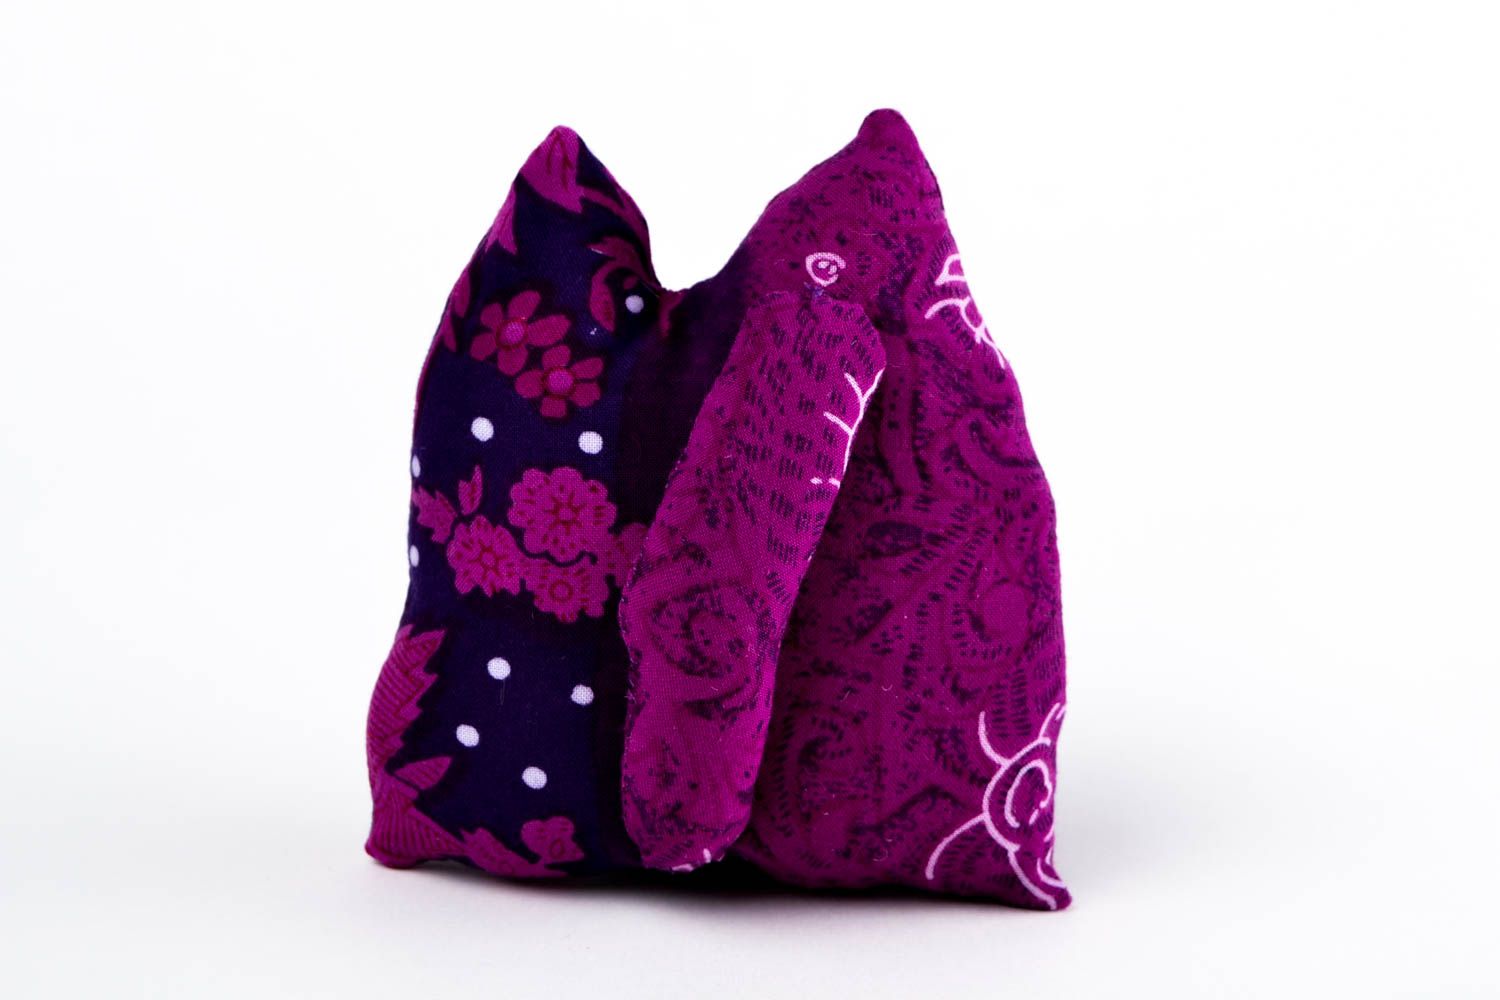 Интерьерная игрушка ручной работы игрушка из ткани фиолетовая игрушка кот фото 4